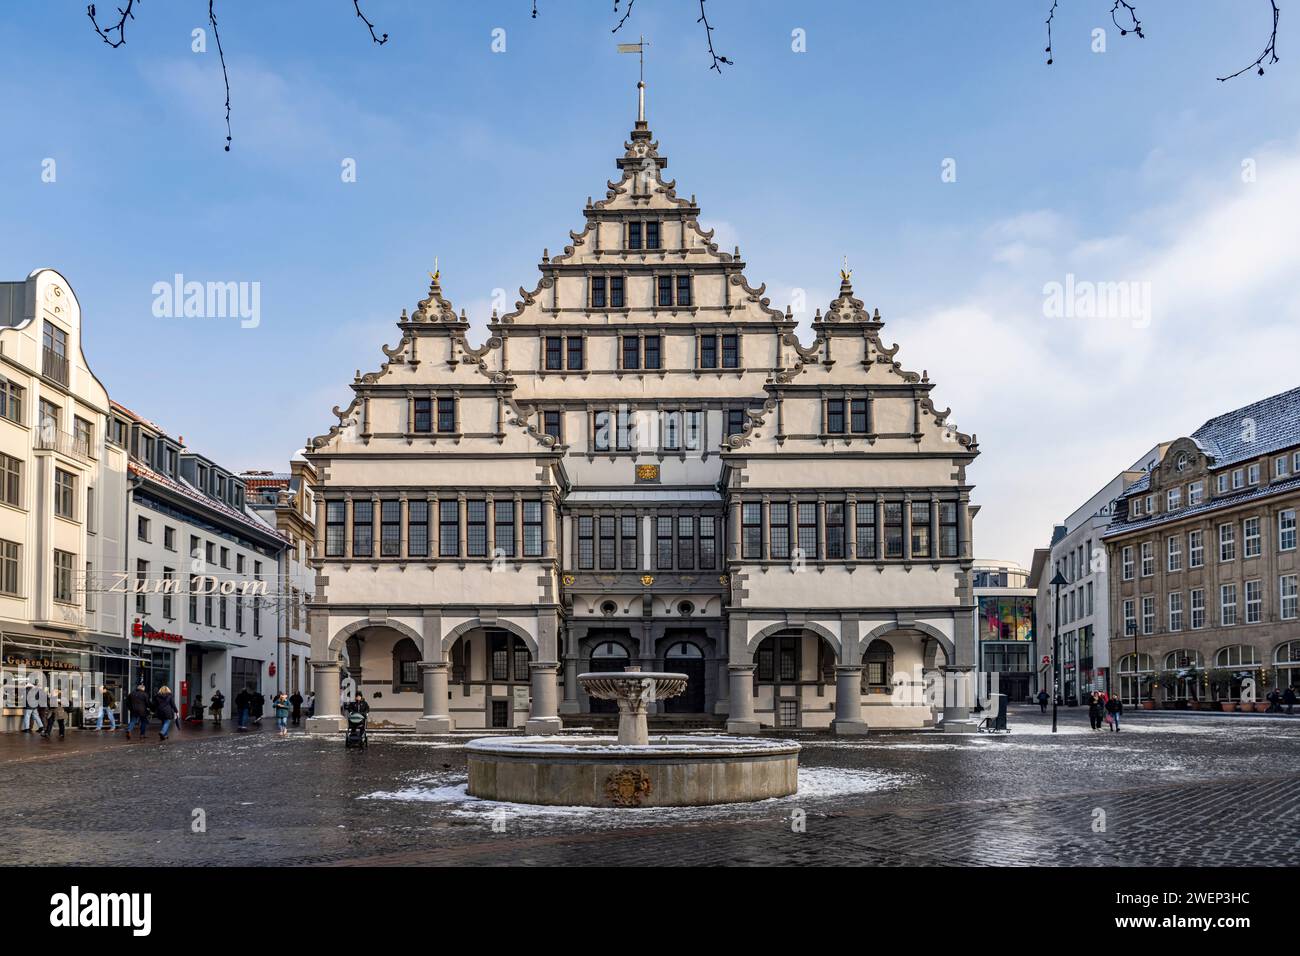 Das Rathaus in Paderborn, Nordrhein-Westfalen, Deutschland, Europa |  Paderborn Town hall, North Rhine-Westphalia, Germany, Europe Stock Photo